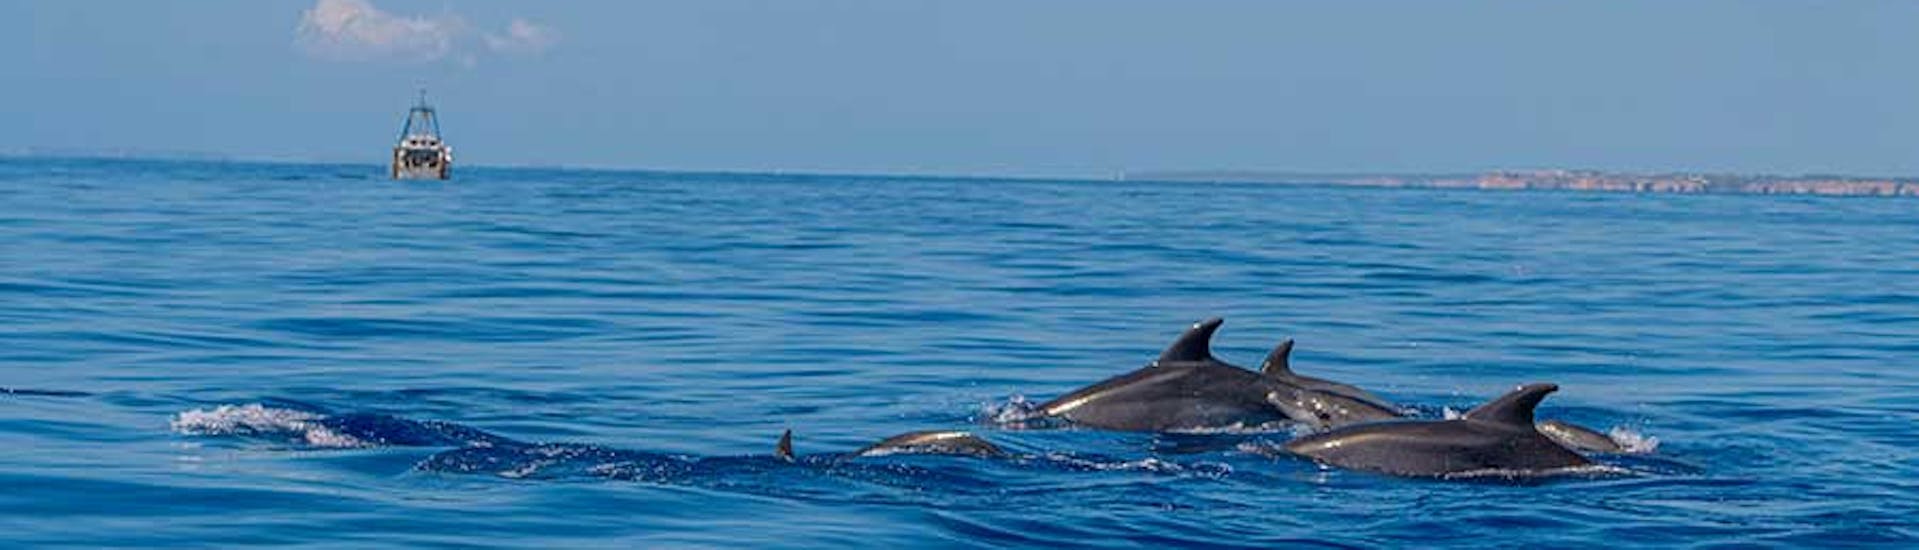 Paseo en catamarán a lo largo de Cala Mondragó con Avistamiento de Delfines.